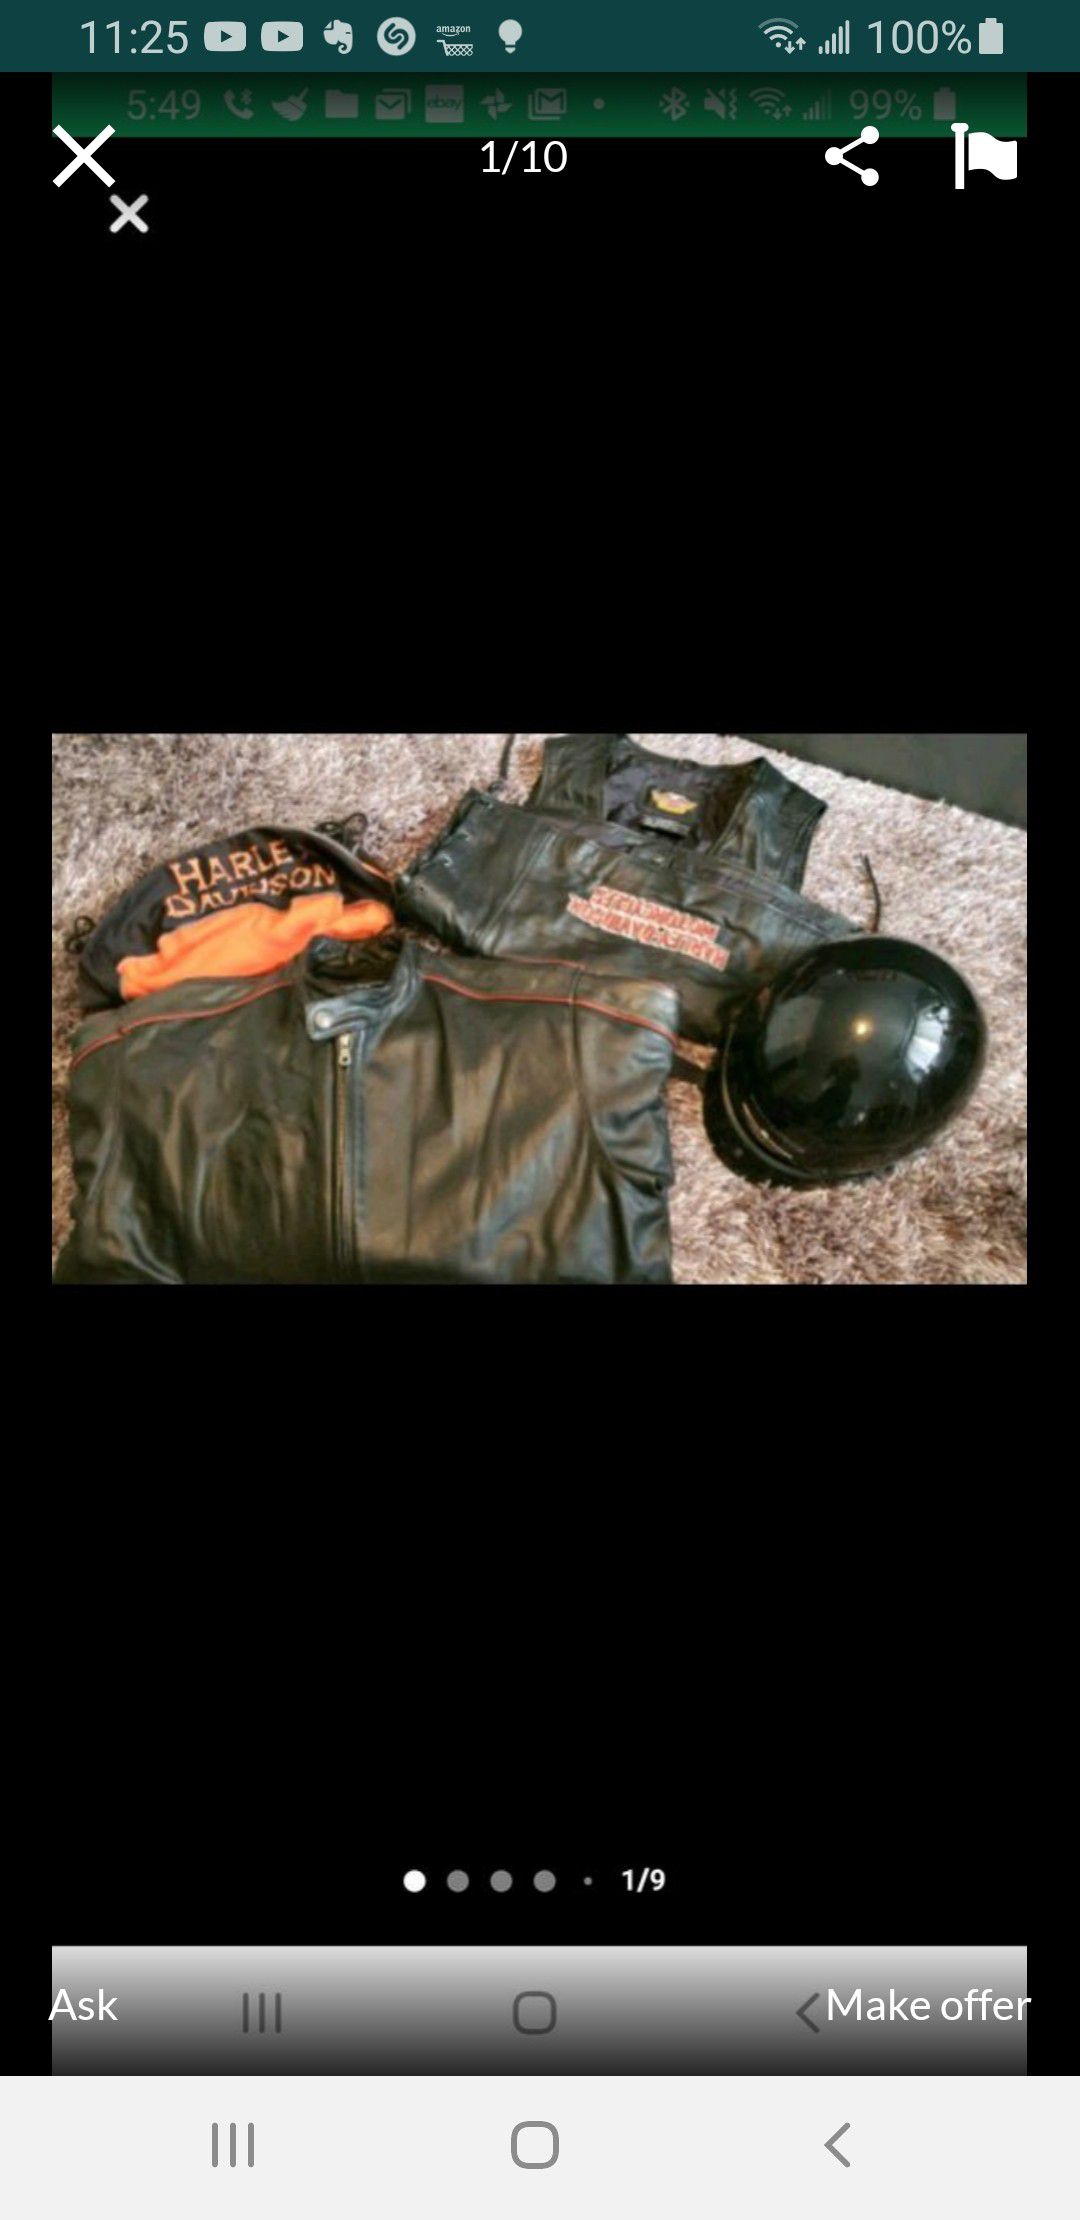 Harley Davidson Leather Jacket, Leather Vest & Hamlet.